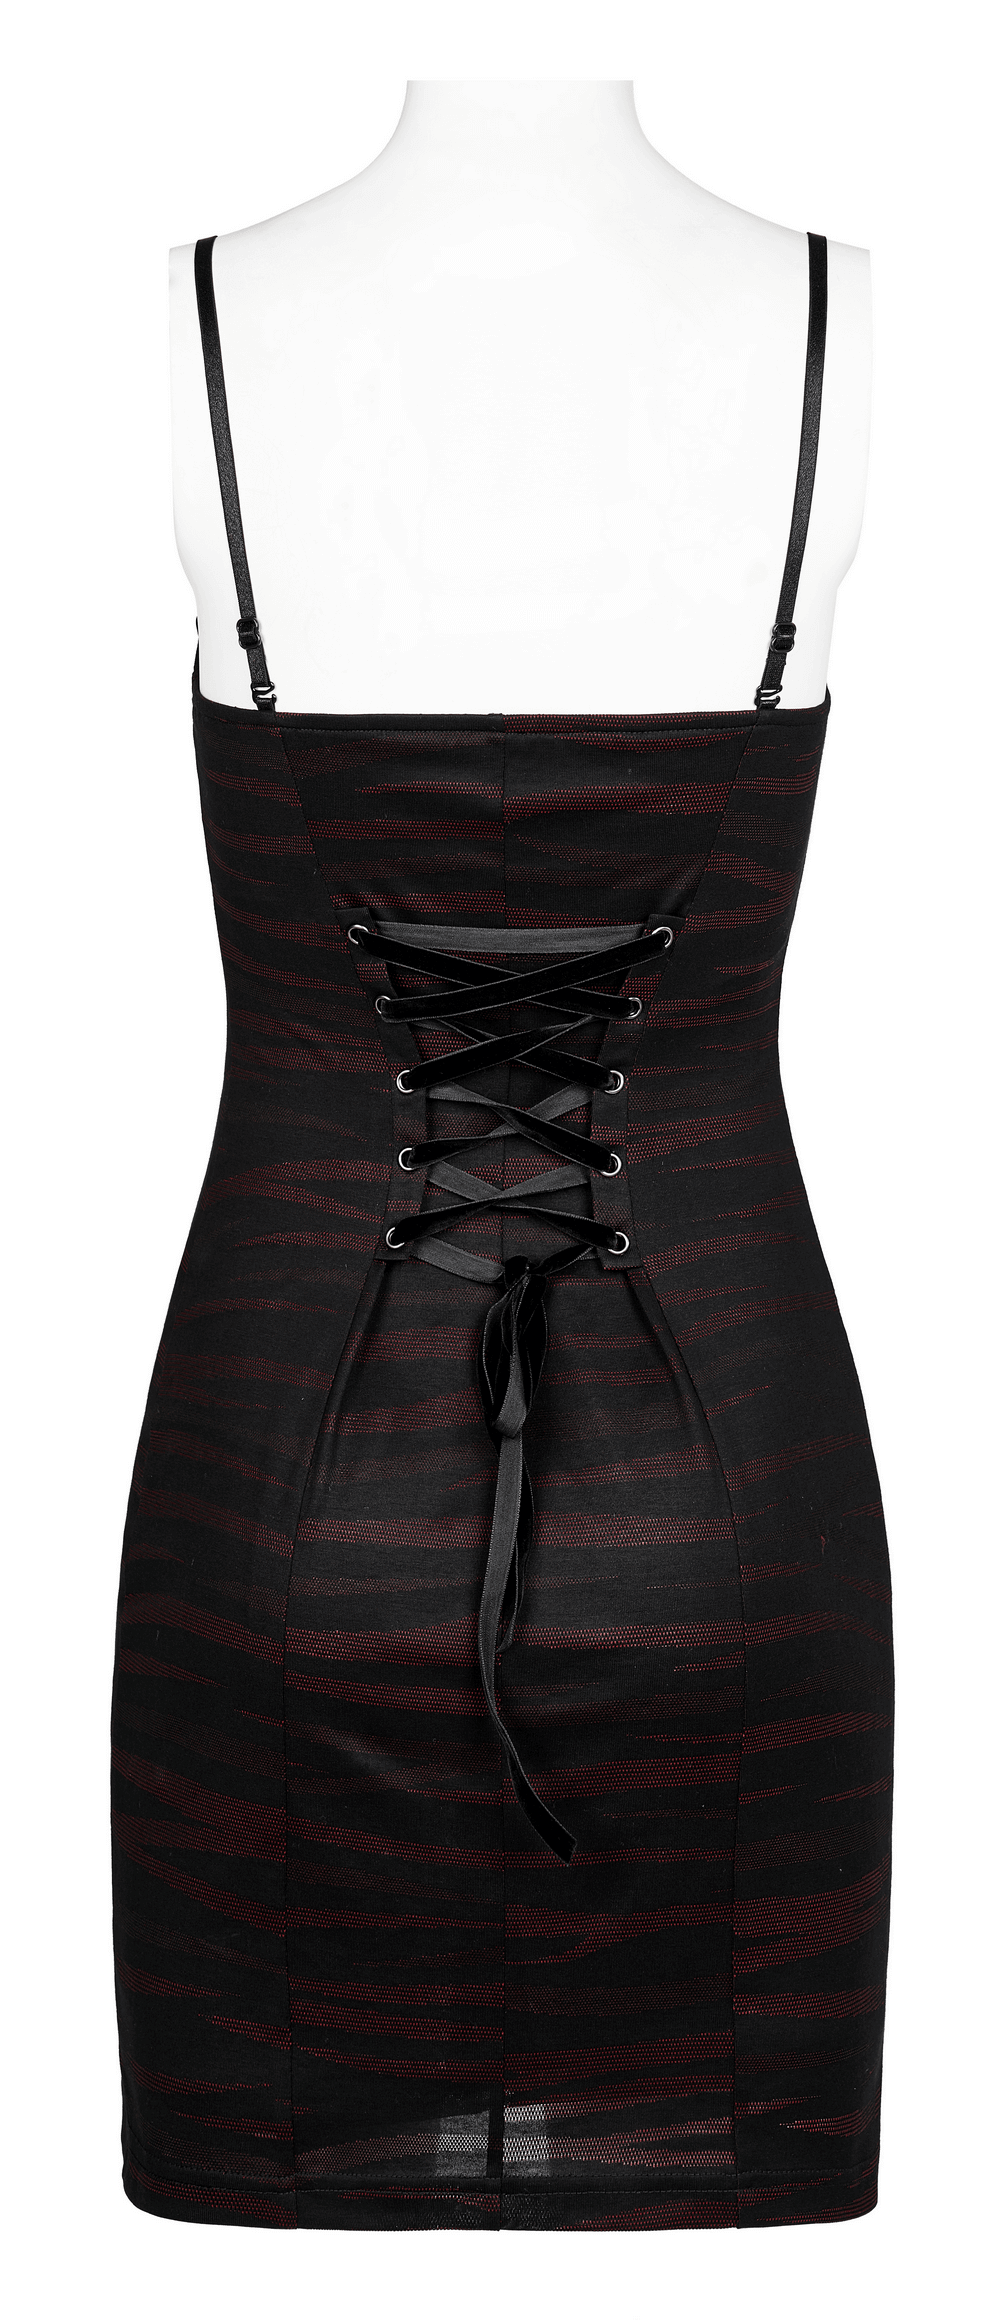 Striped Bat Neckline Gothic Slip Dress With Adjustable Straps